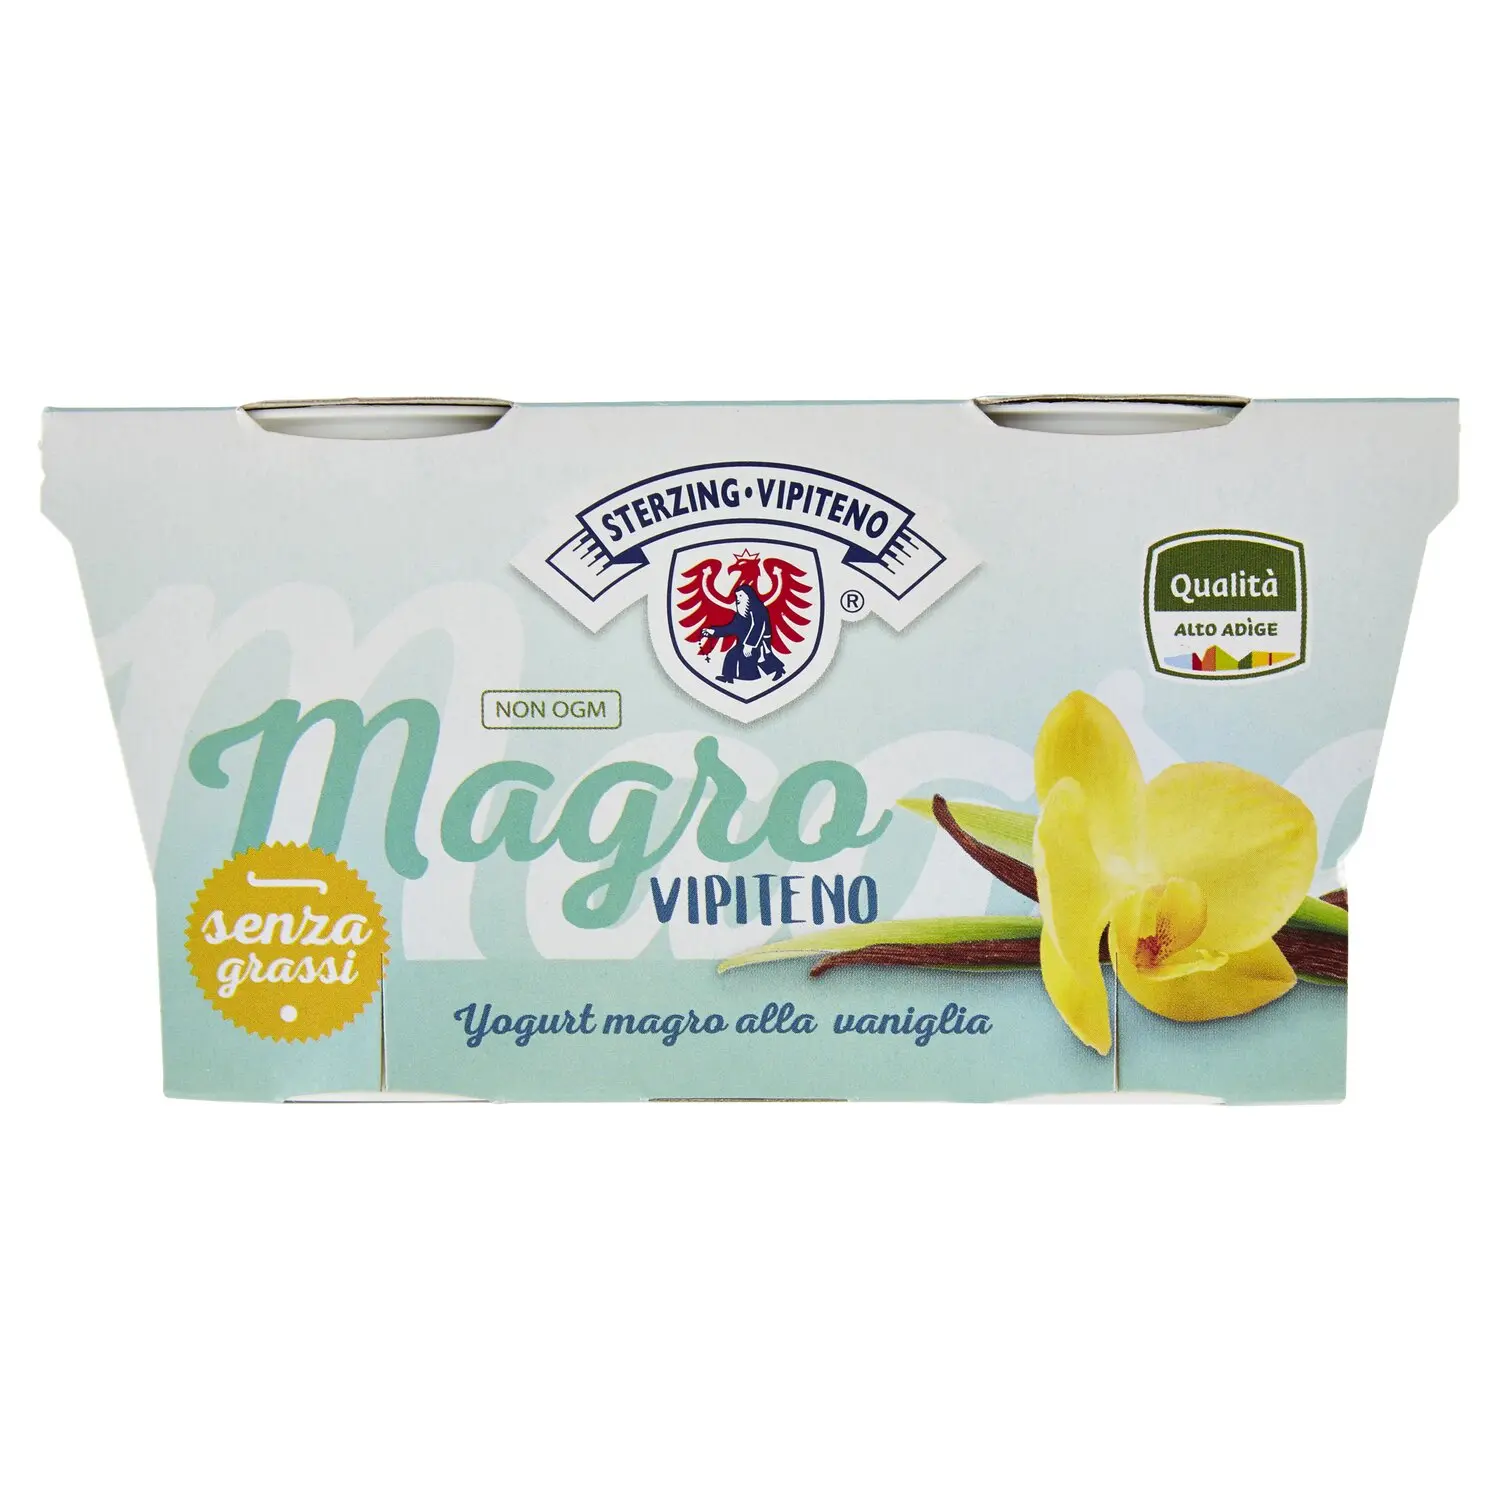 Sterzing Vipiteno Magro Vipiteno Yogurt magro alla vaniglia 2 x